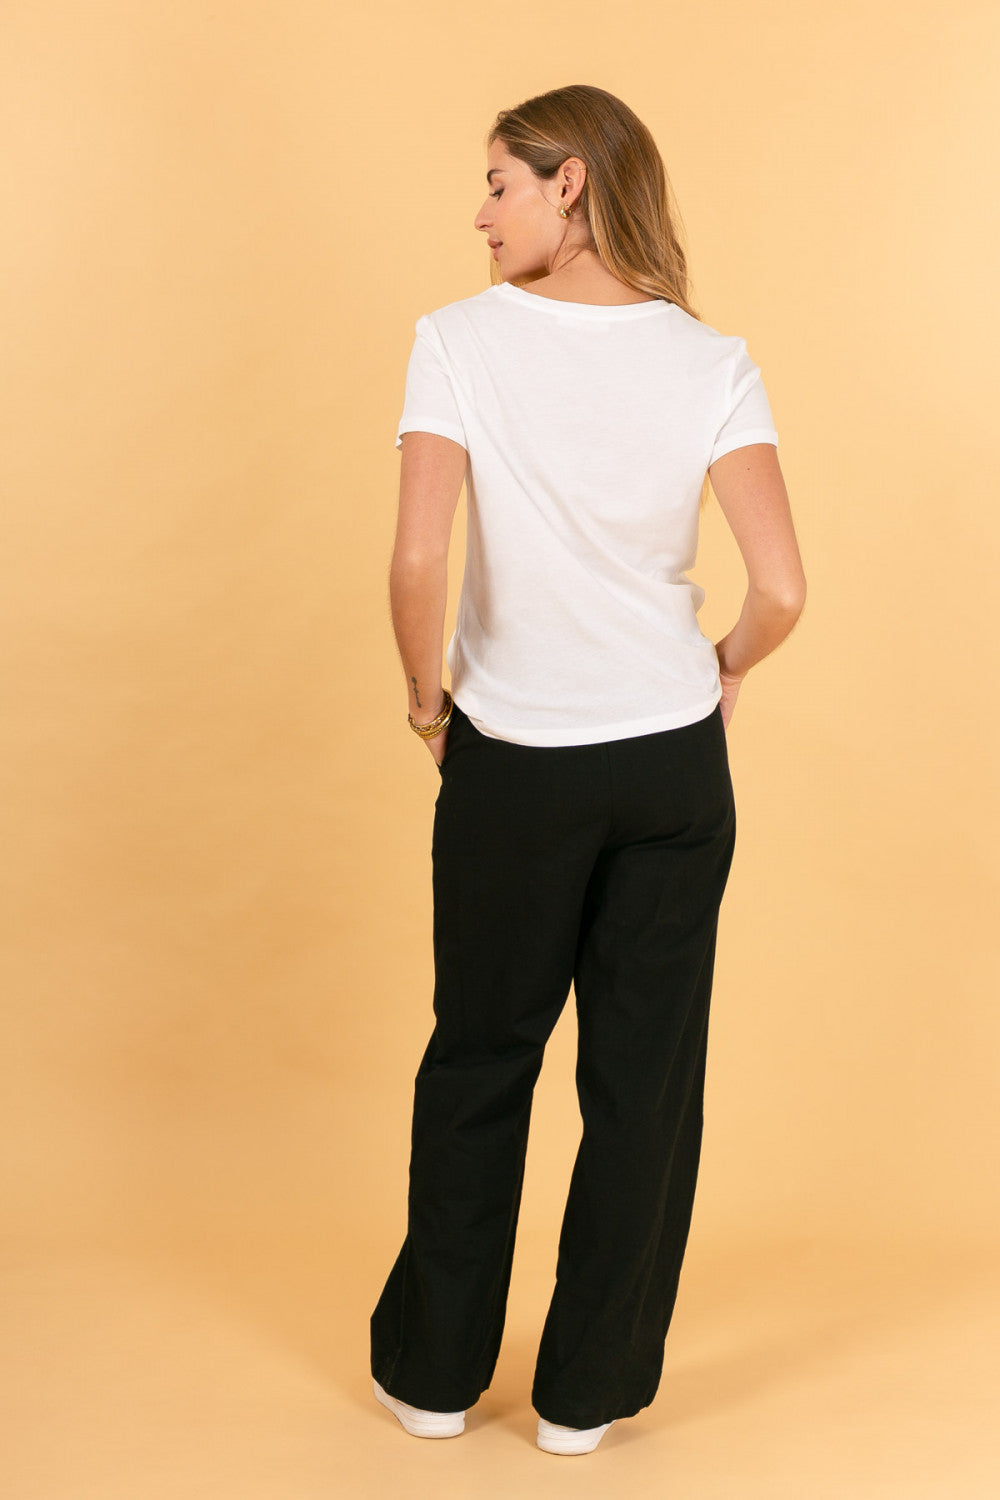 pantaloni cotone, color nero a vita alta con bottoni centrali